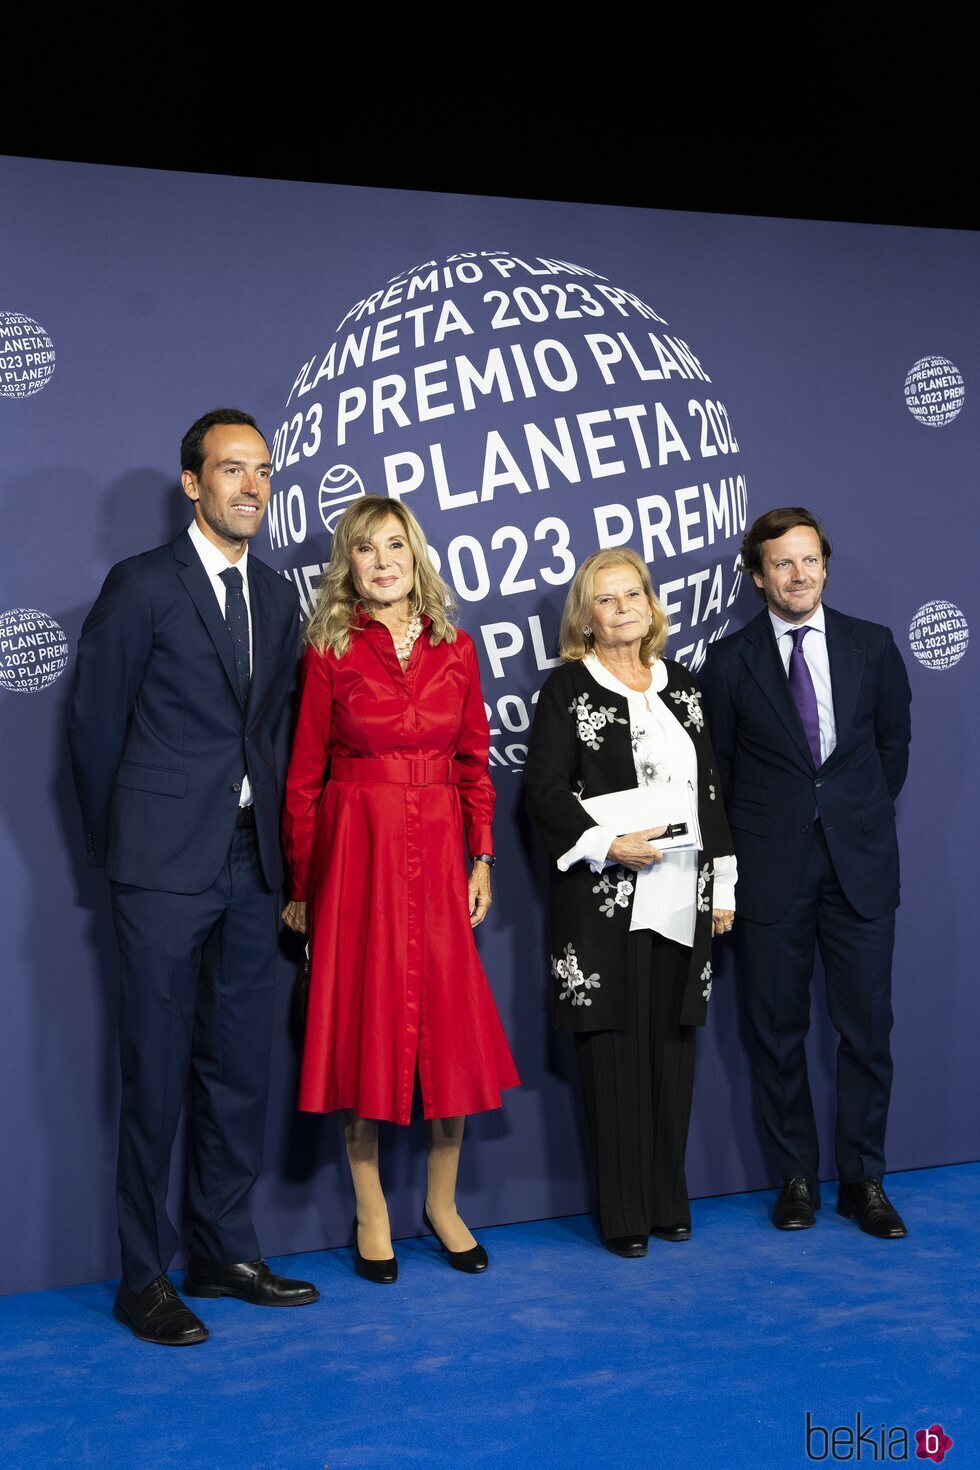 Pilar Eyre y su hijo en el Premio Planeta 2023